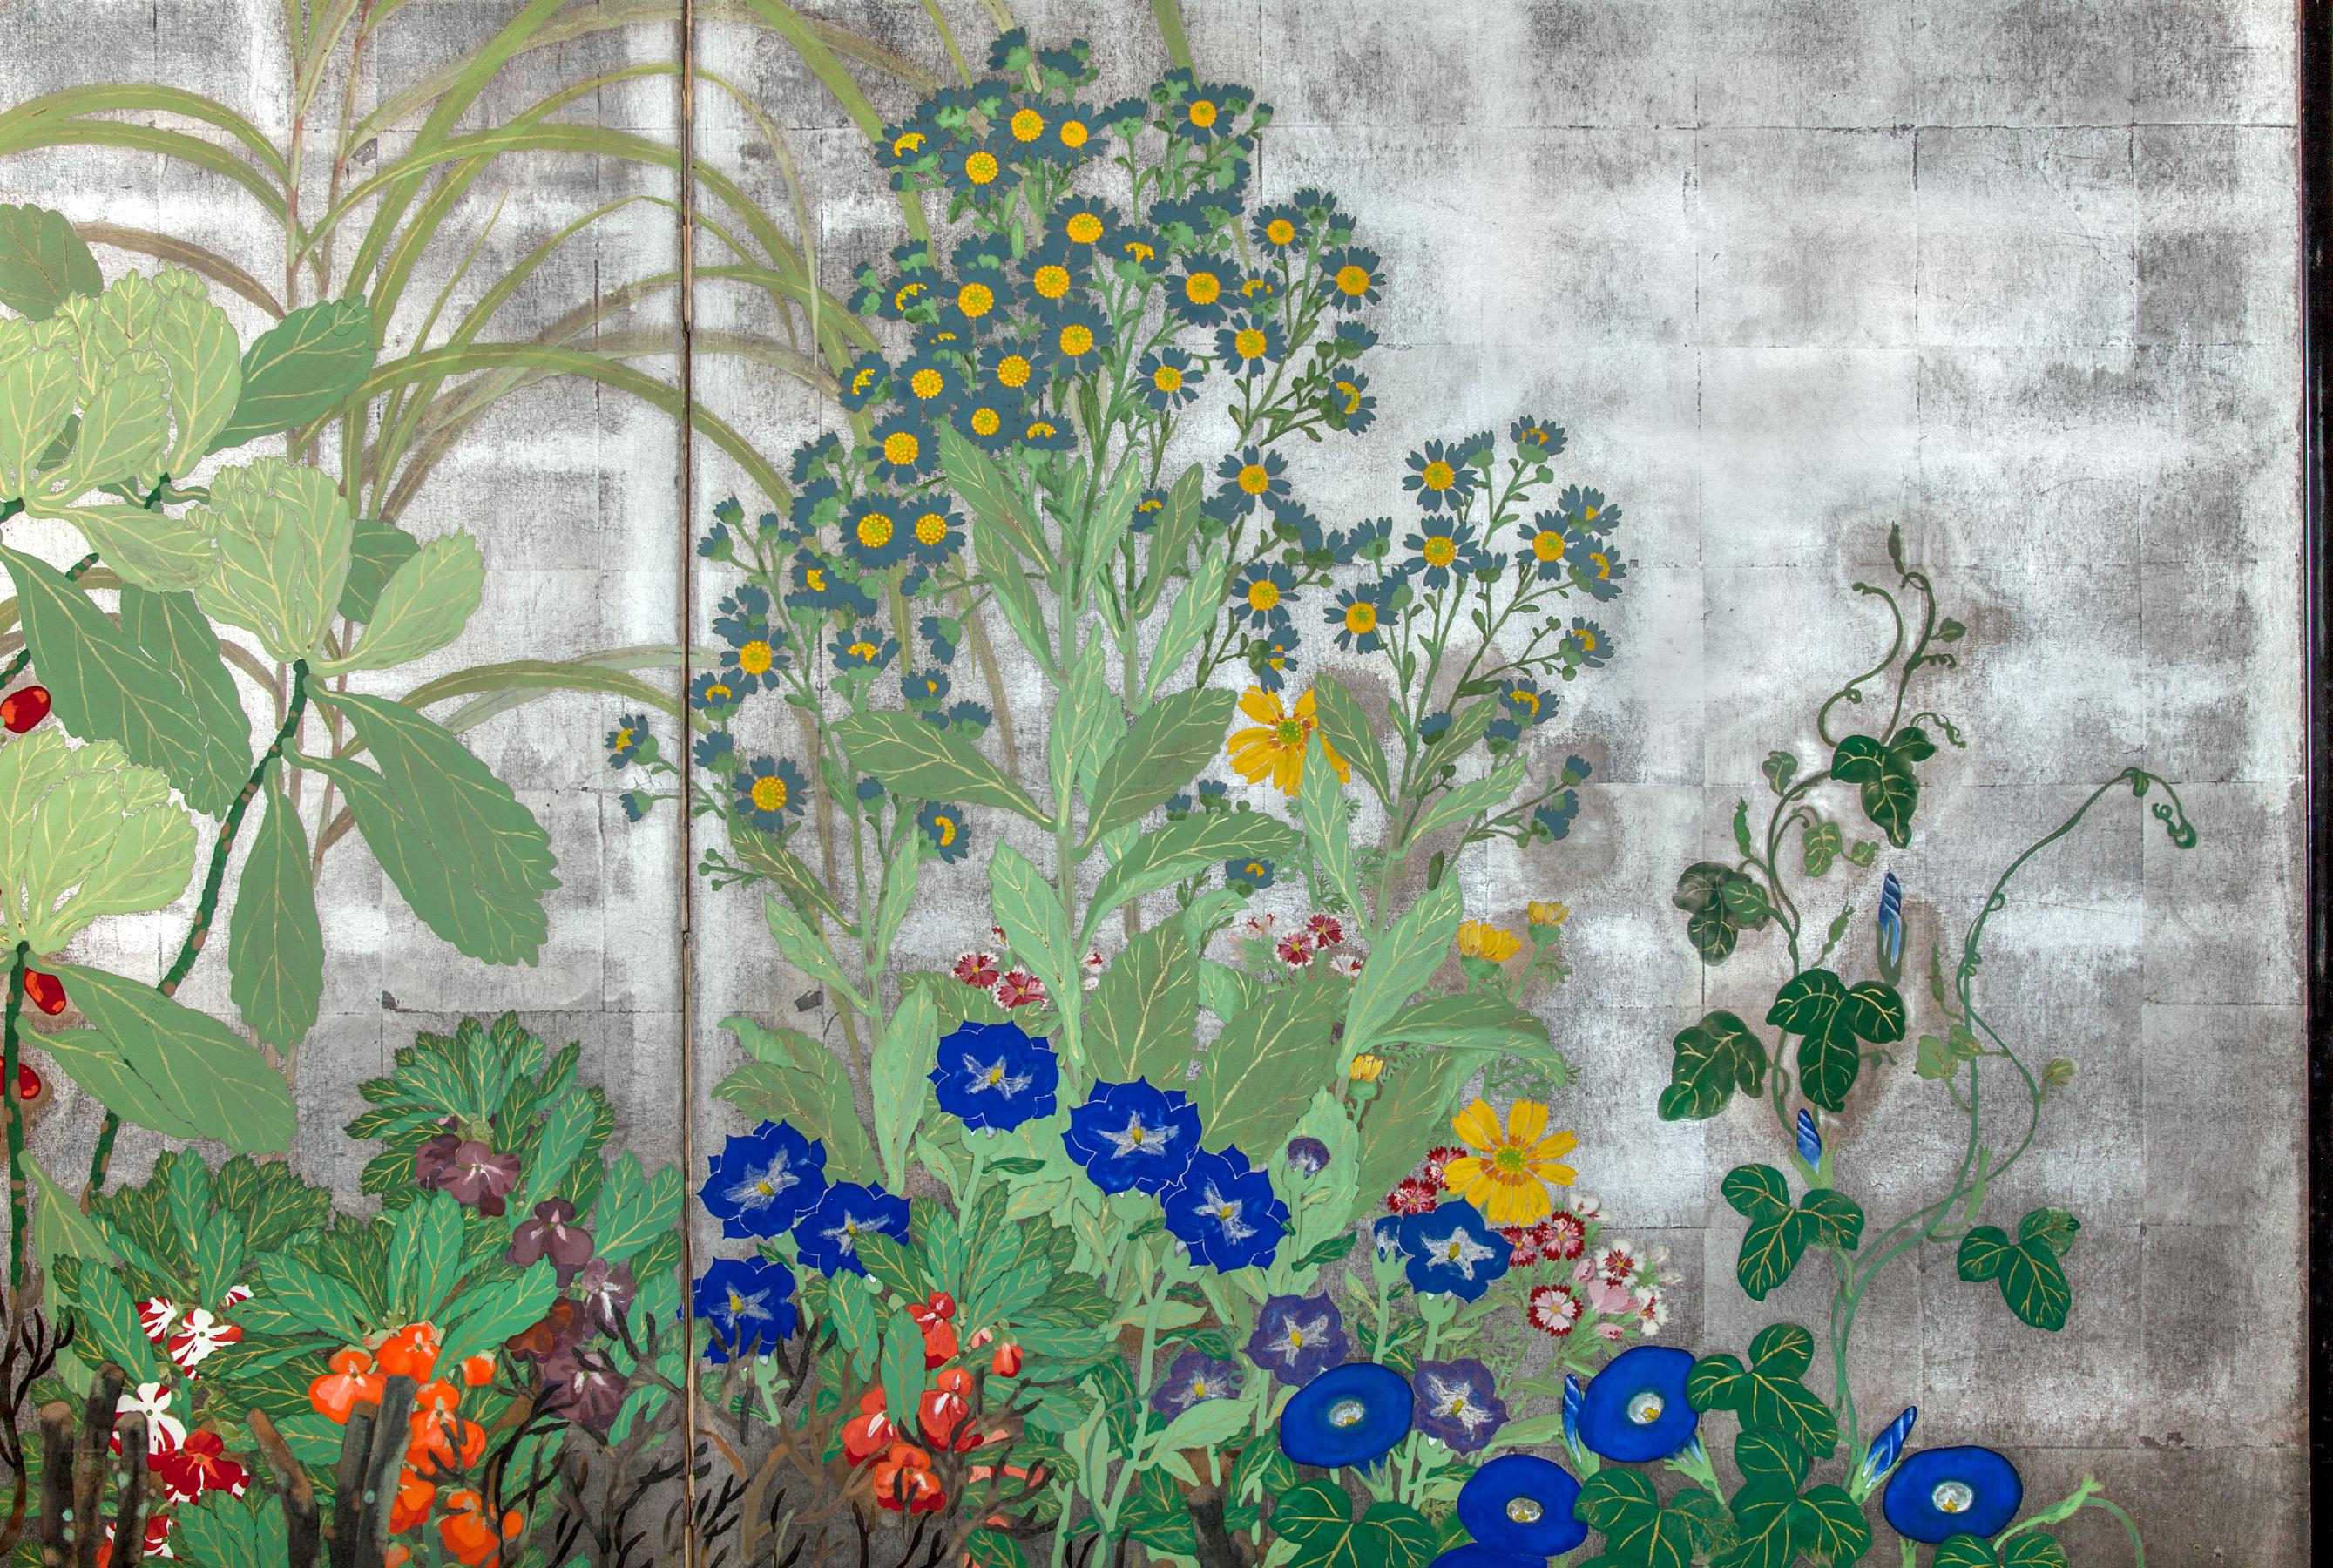 Paravent japonais à deux panneaux : Fleurs d'été sur argent. Peinture de la période Meiji (1868 - 1912) représentant des fleurs d'été, notamment des ipomées et des marguerites, contre une clôture de jardin. Signature et cachet lus : Mukai. Pigments